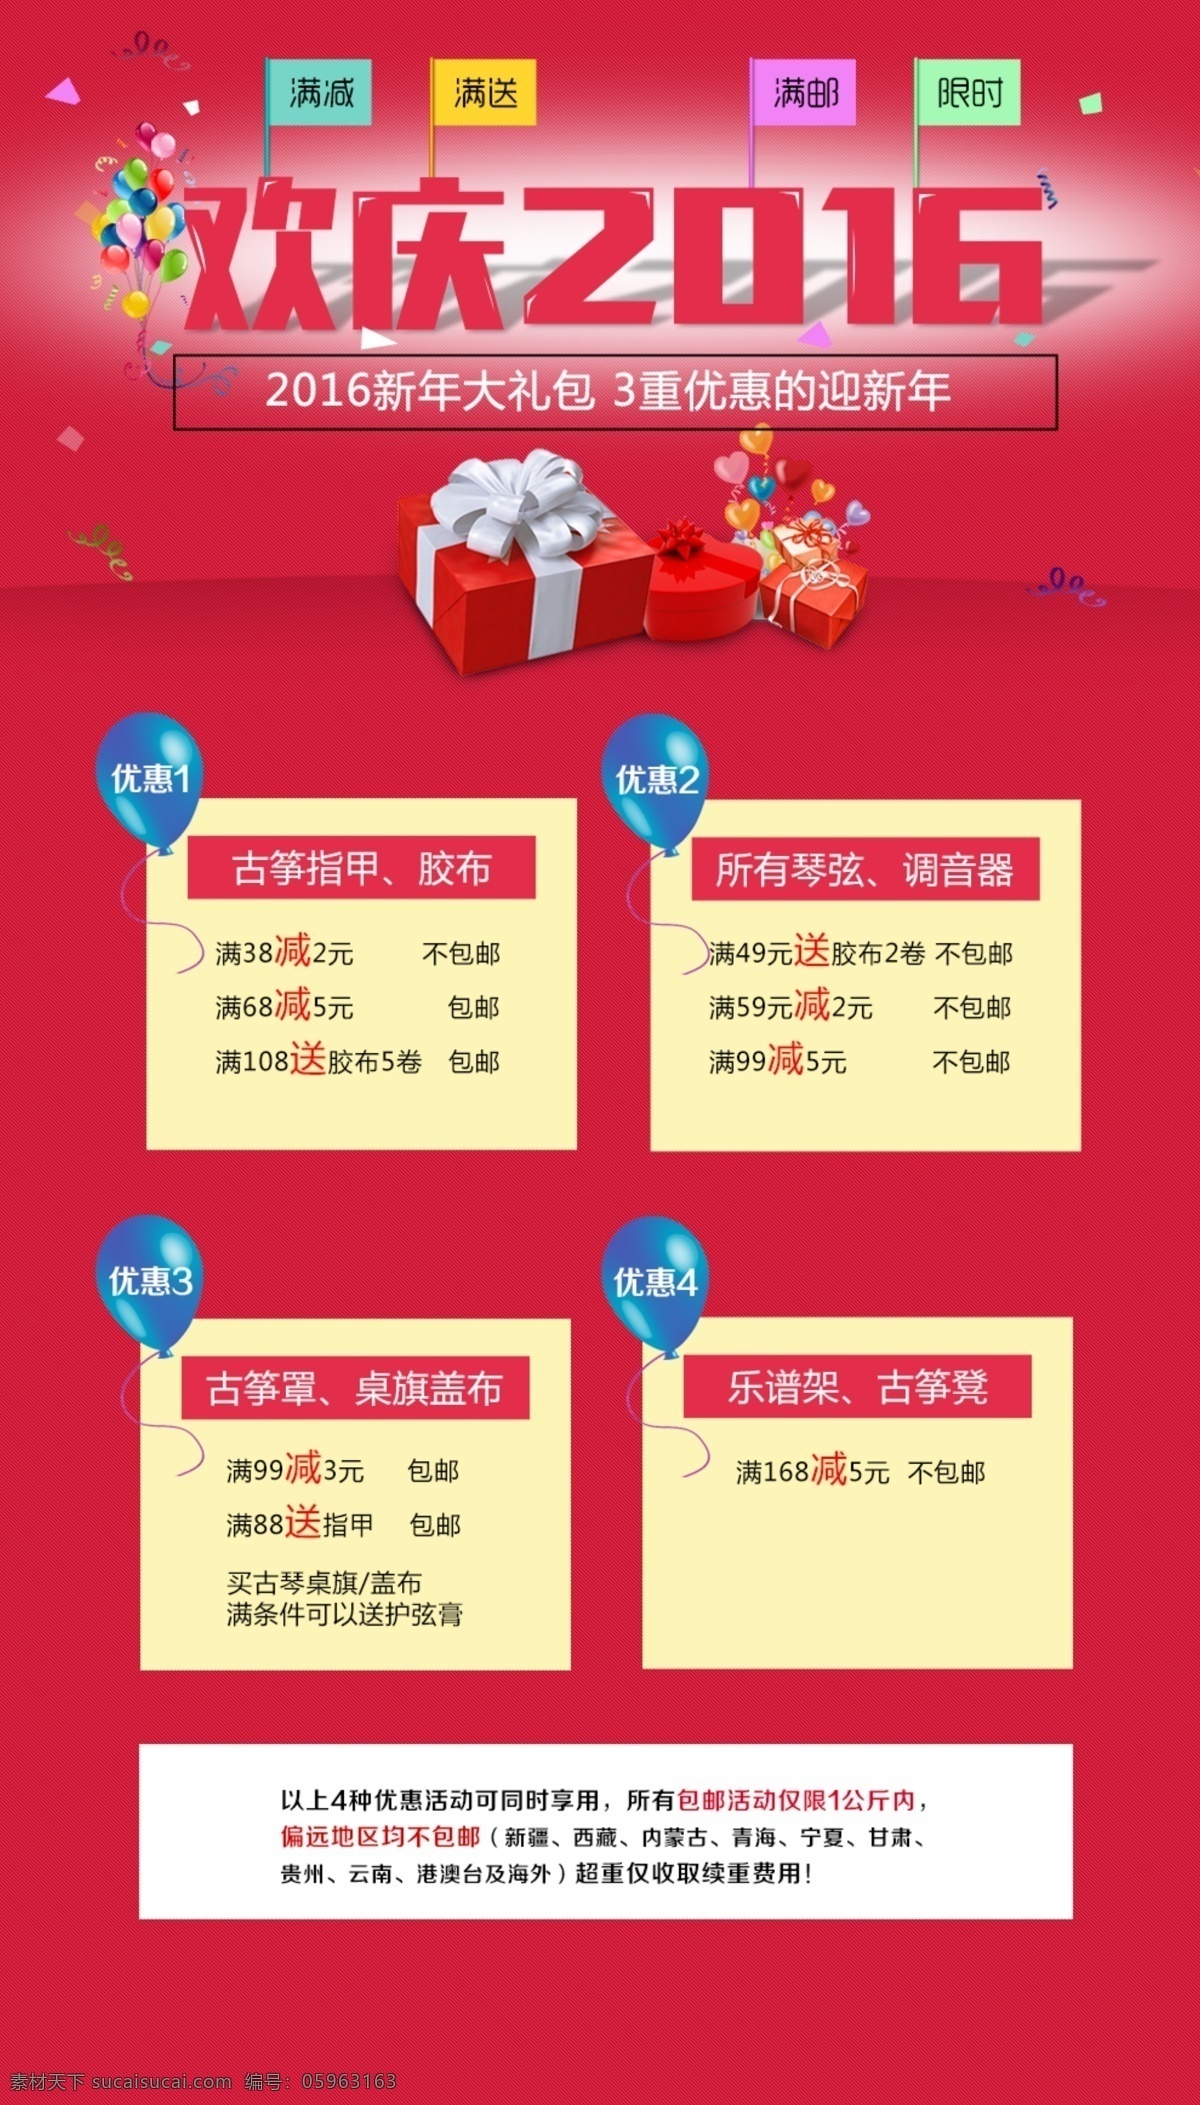 国庆节 广告 图 喜庆 背景 礼物 天猫 汽球 红旗 淘宝